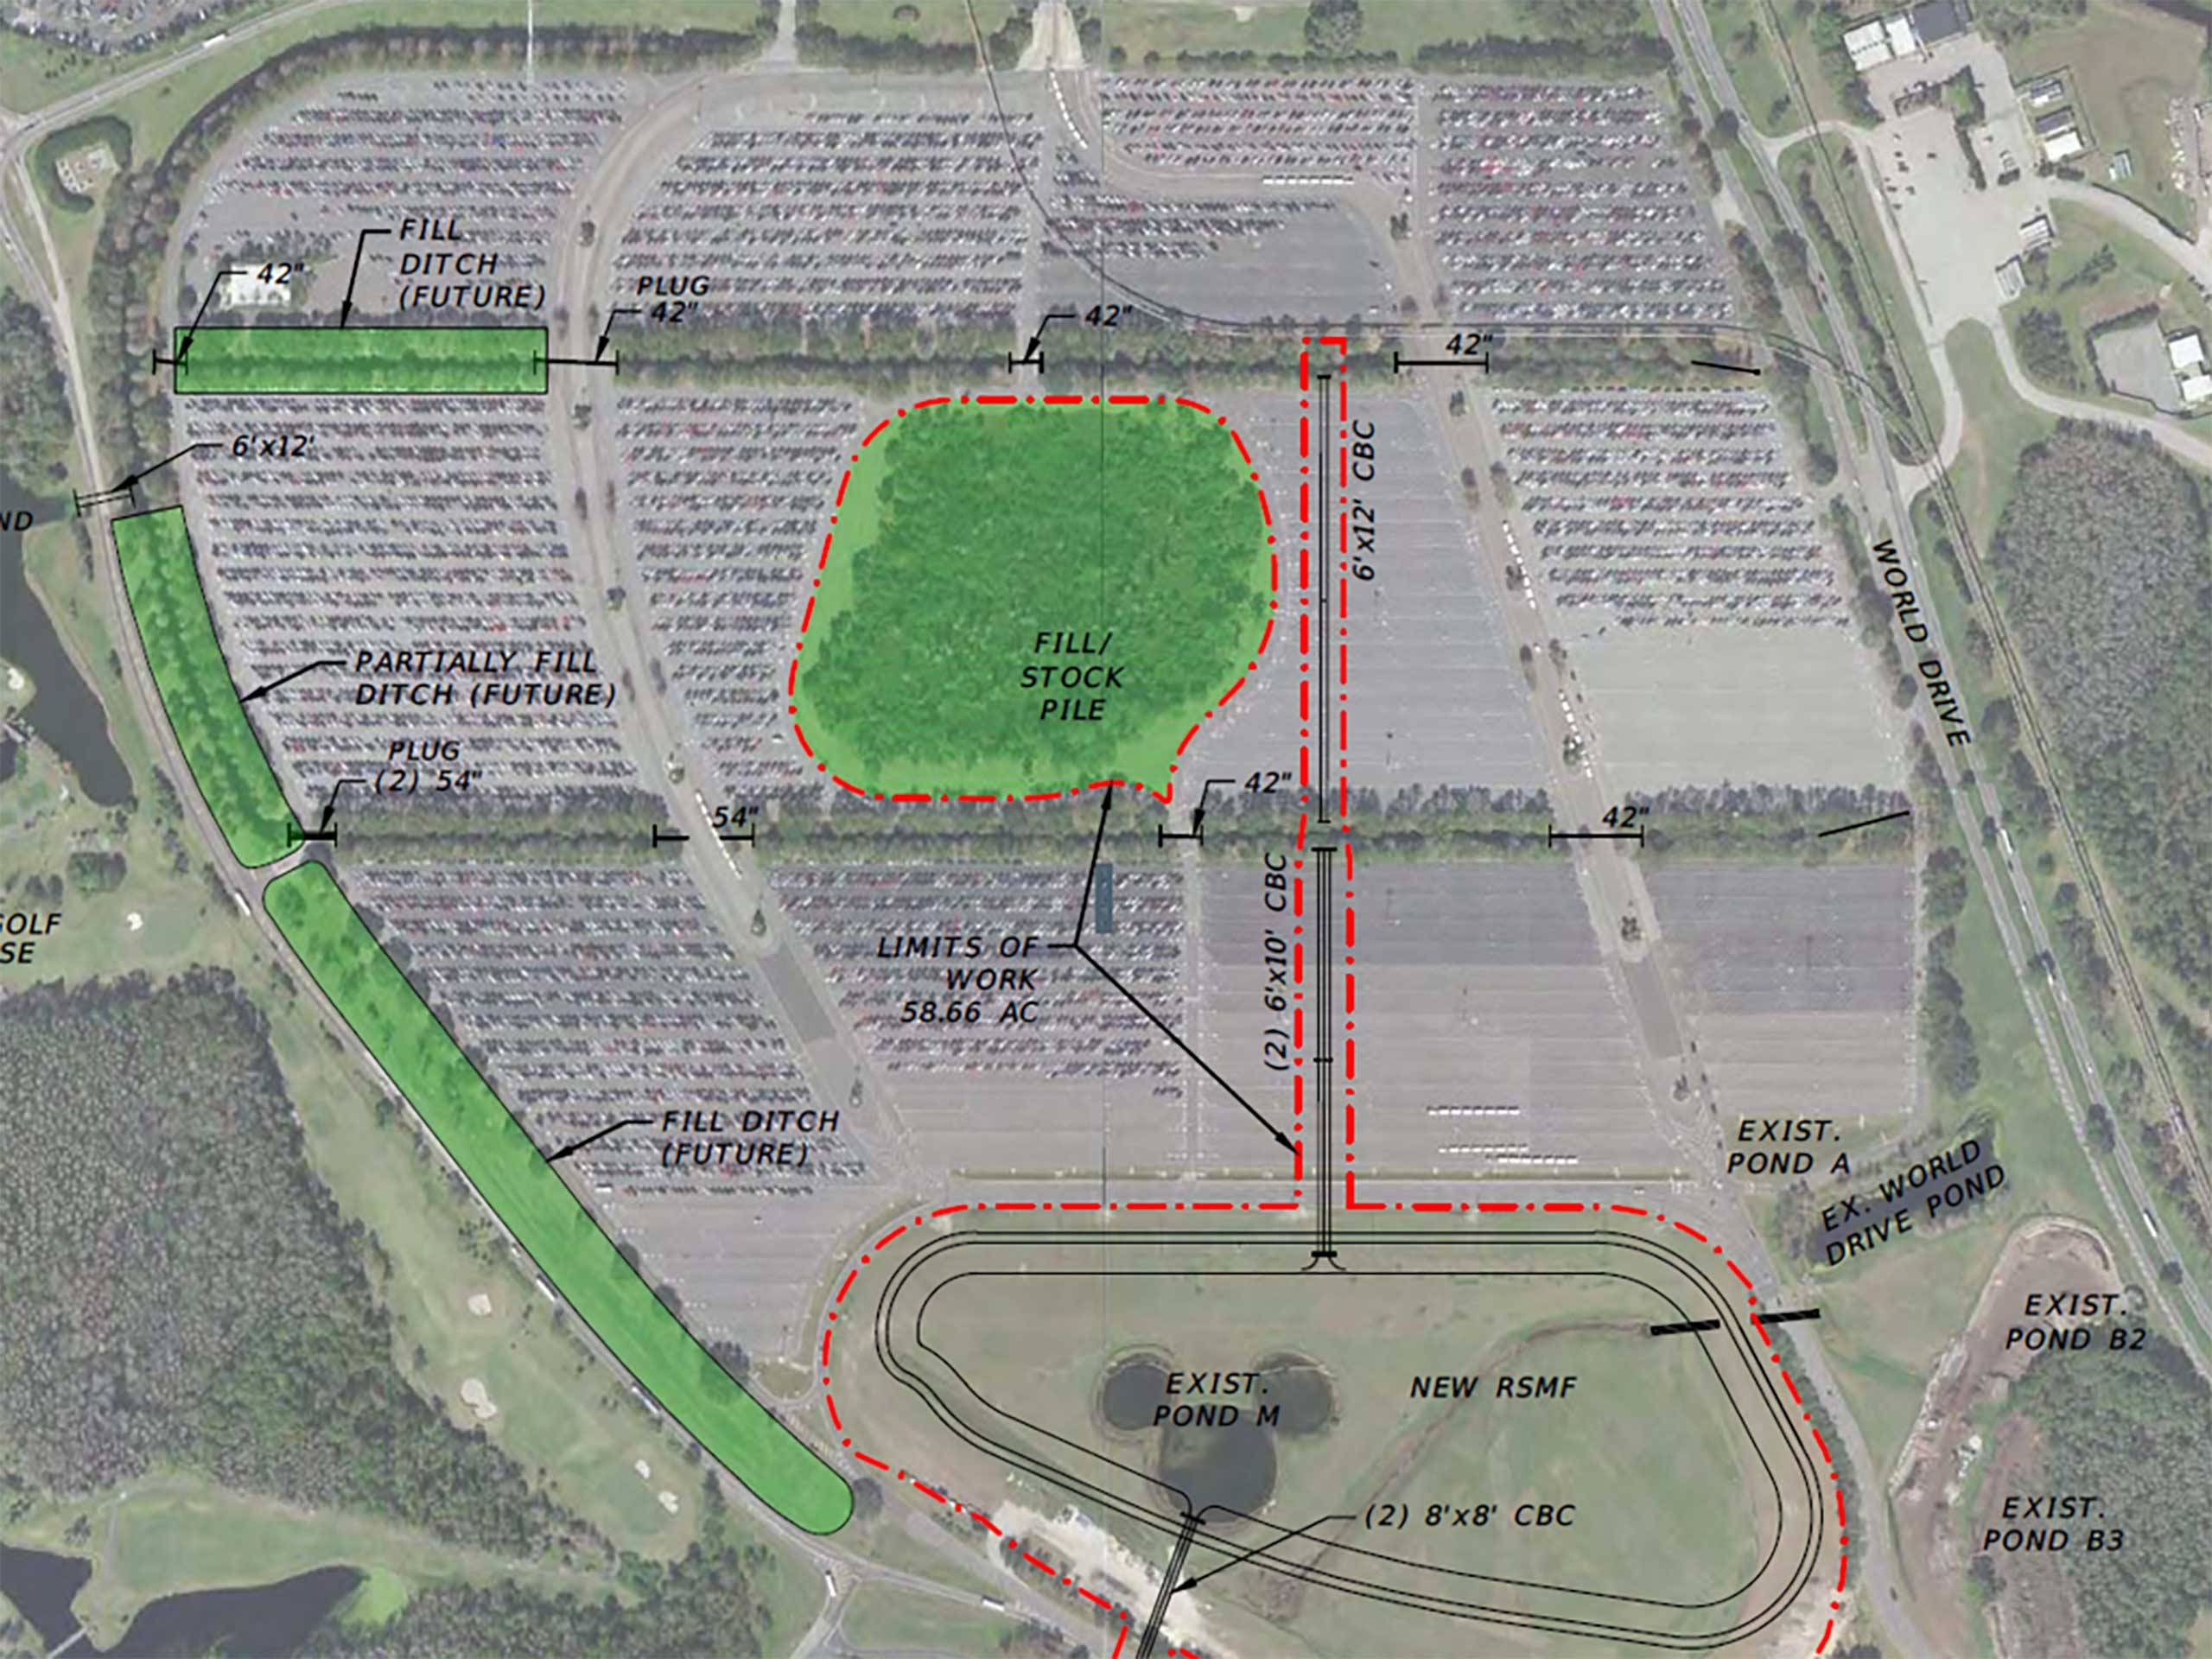 TTC Parking Lot expansion plans